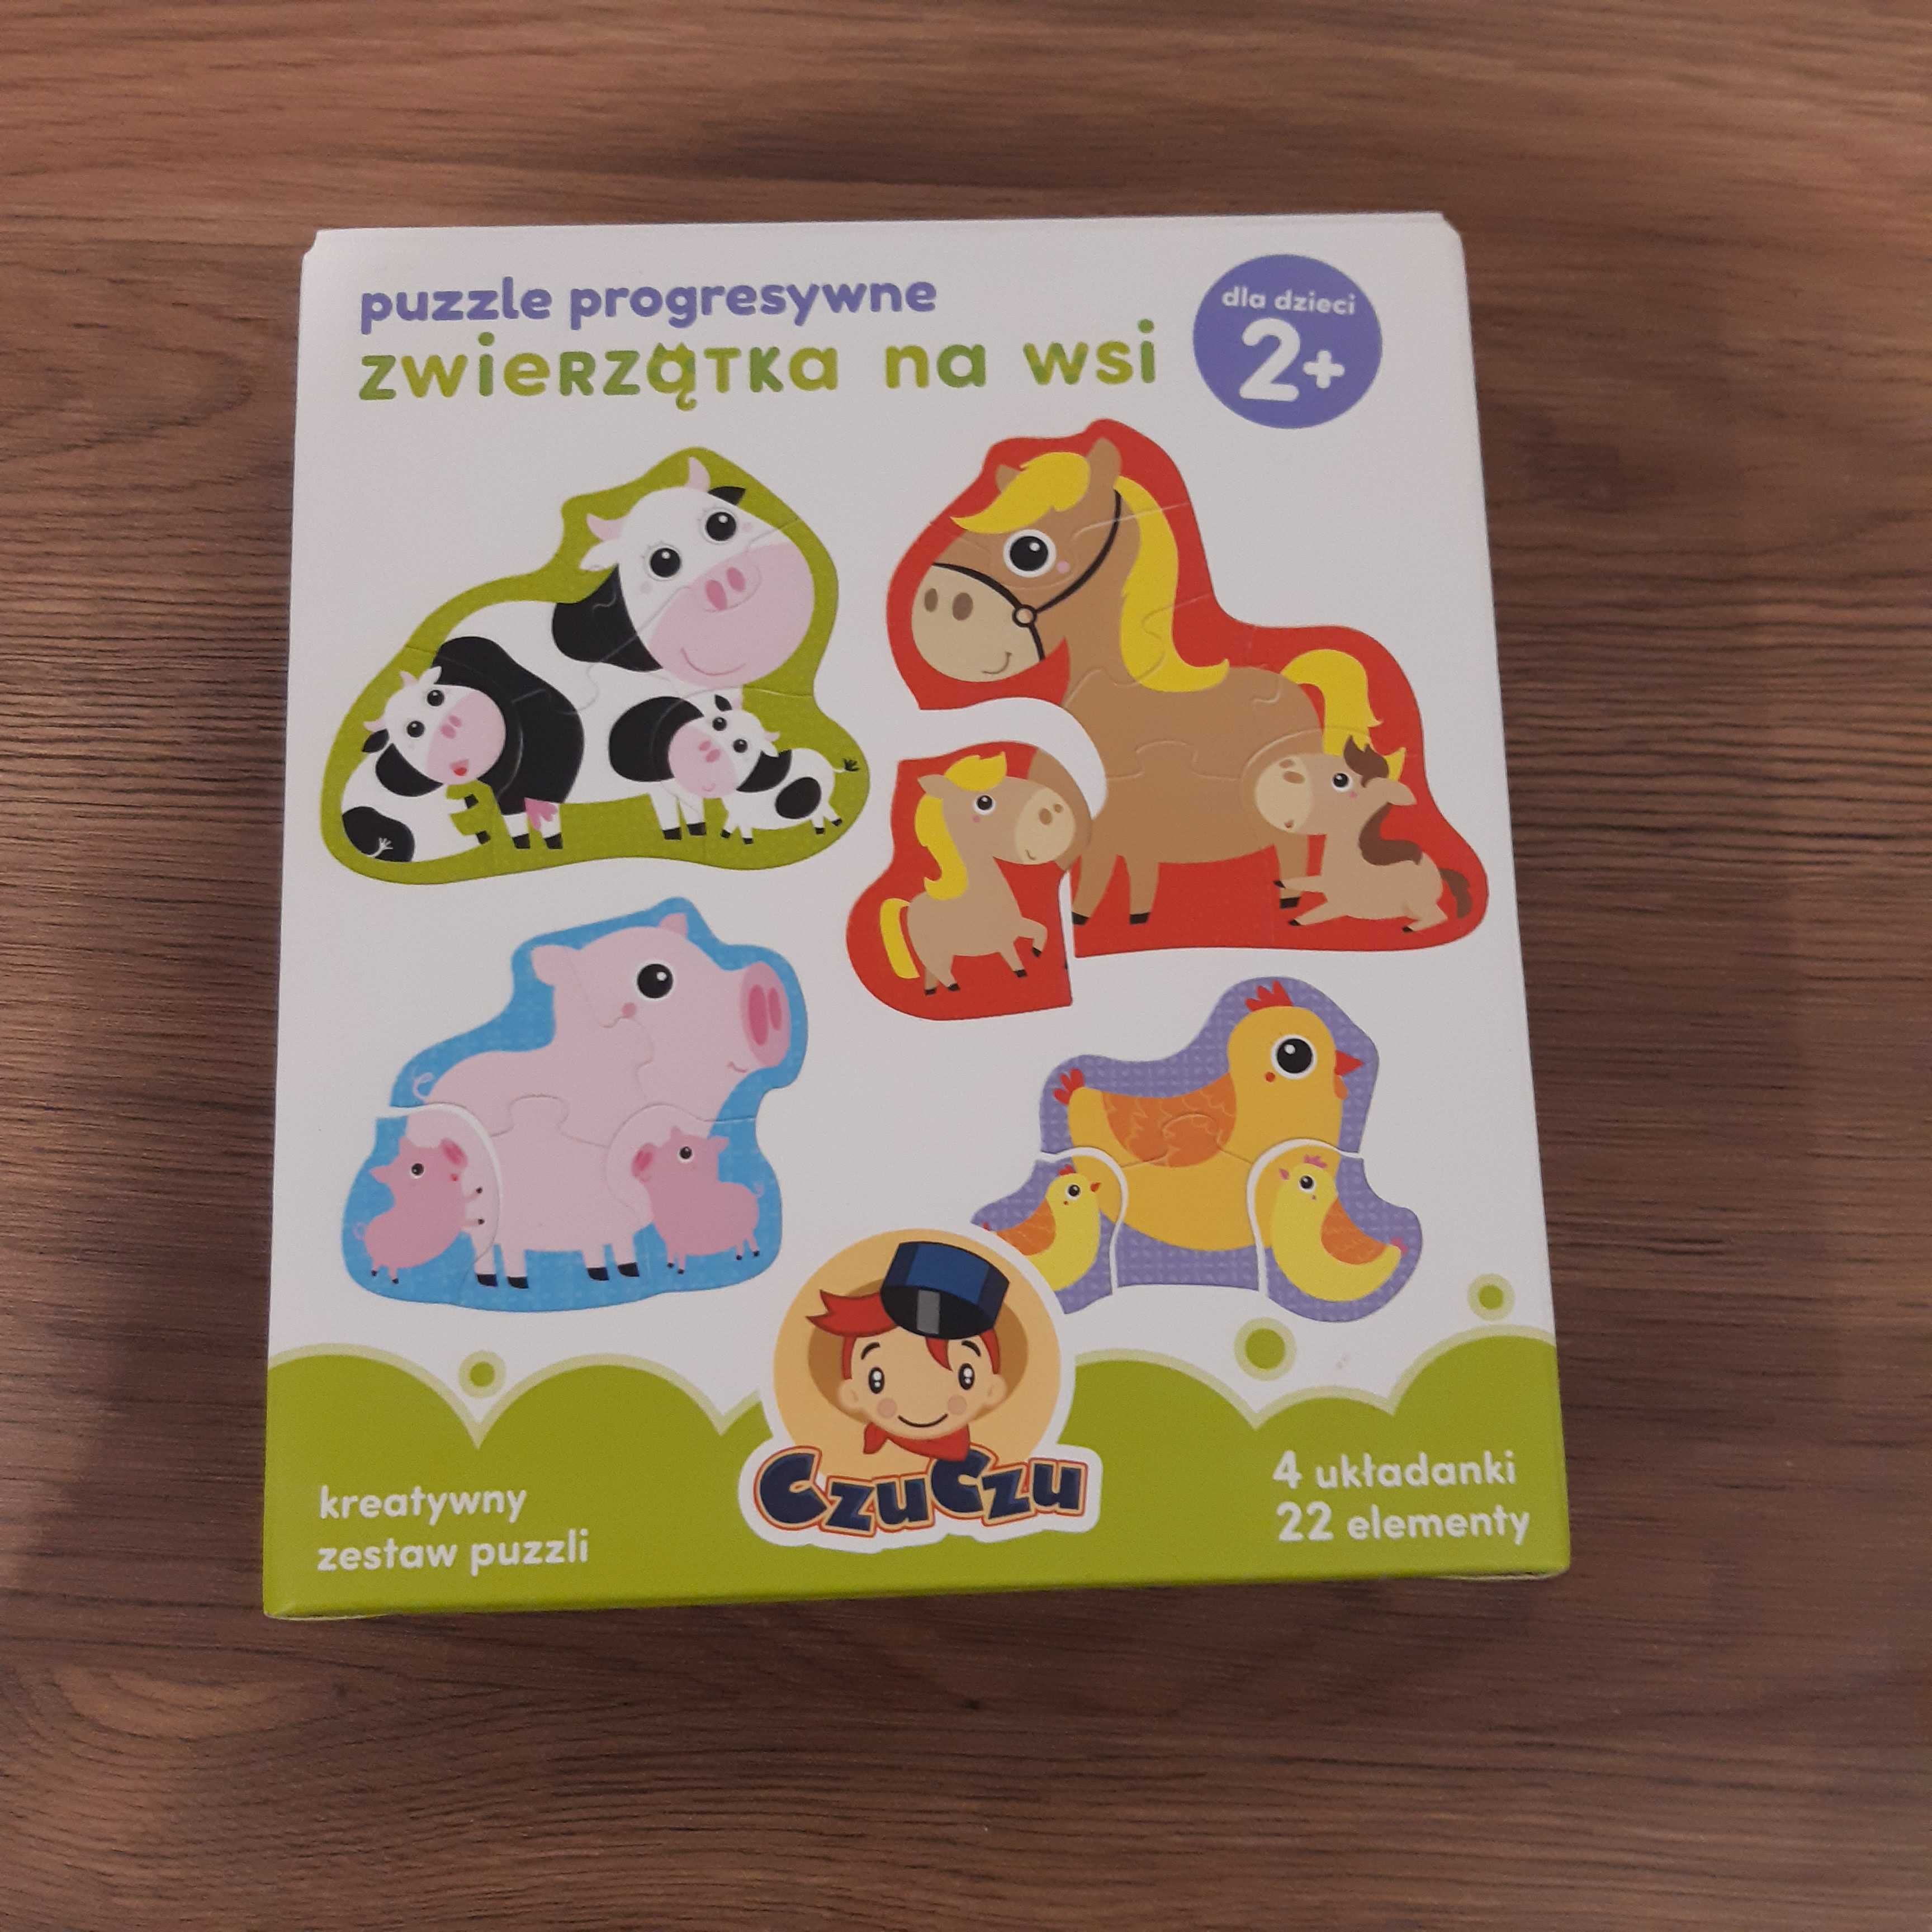 Puzzle CzuCzu progresywne Zwierzatka na wsi 2+ Środa Wielkopolska • OLX.pl